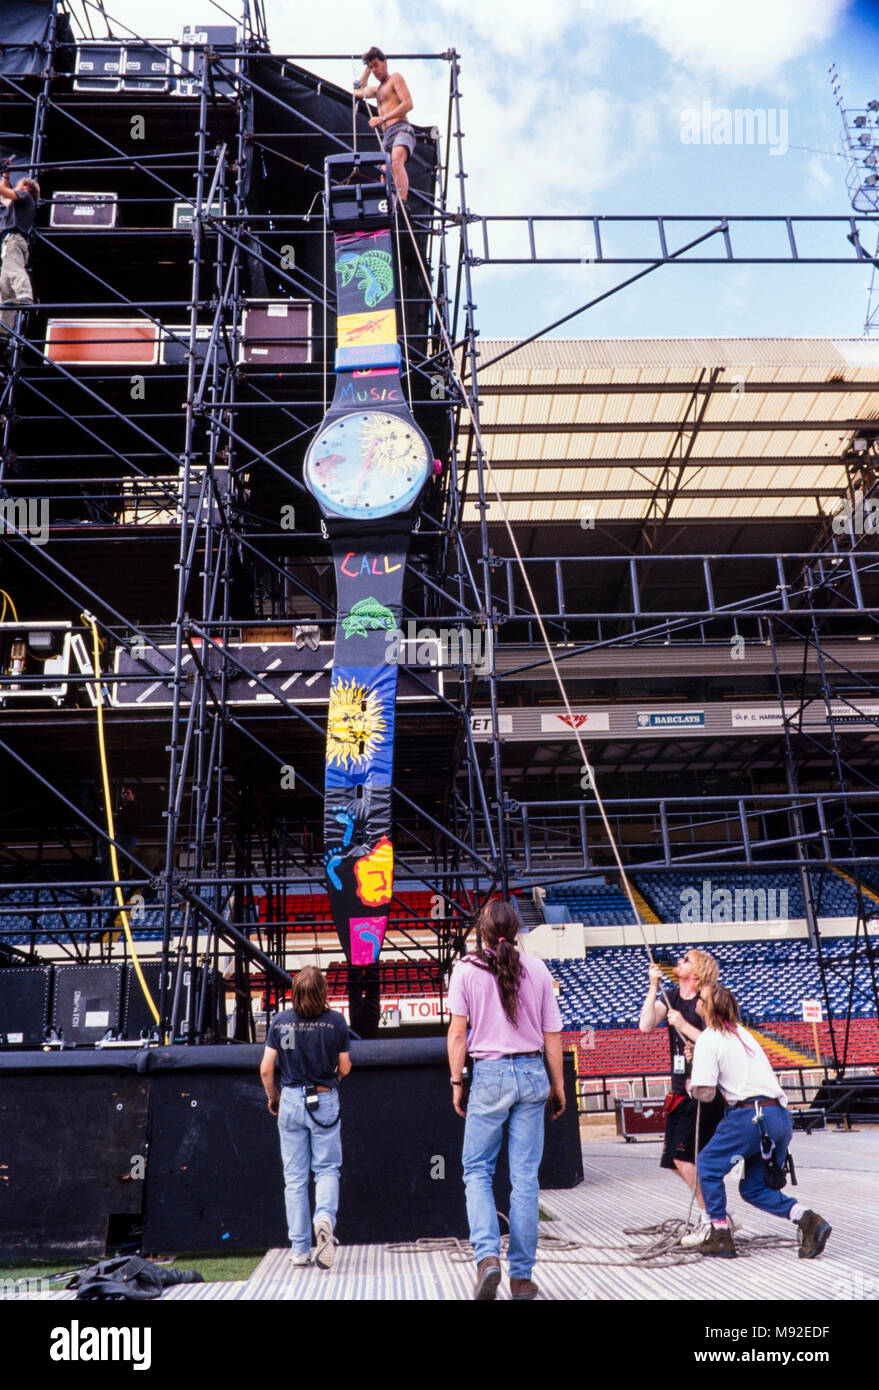 Le transport de l'équipage l'étape d'une montre Swatch à l'échafaudage, Jean Michel Jarre concert au stade de Wembley, le 28 août 1993, archives photo, Londres, Angleterre Banque D'Images